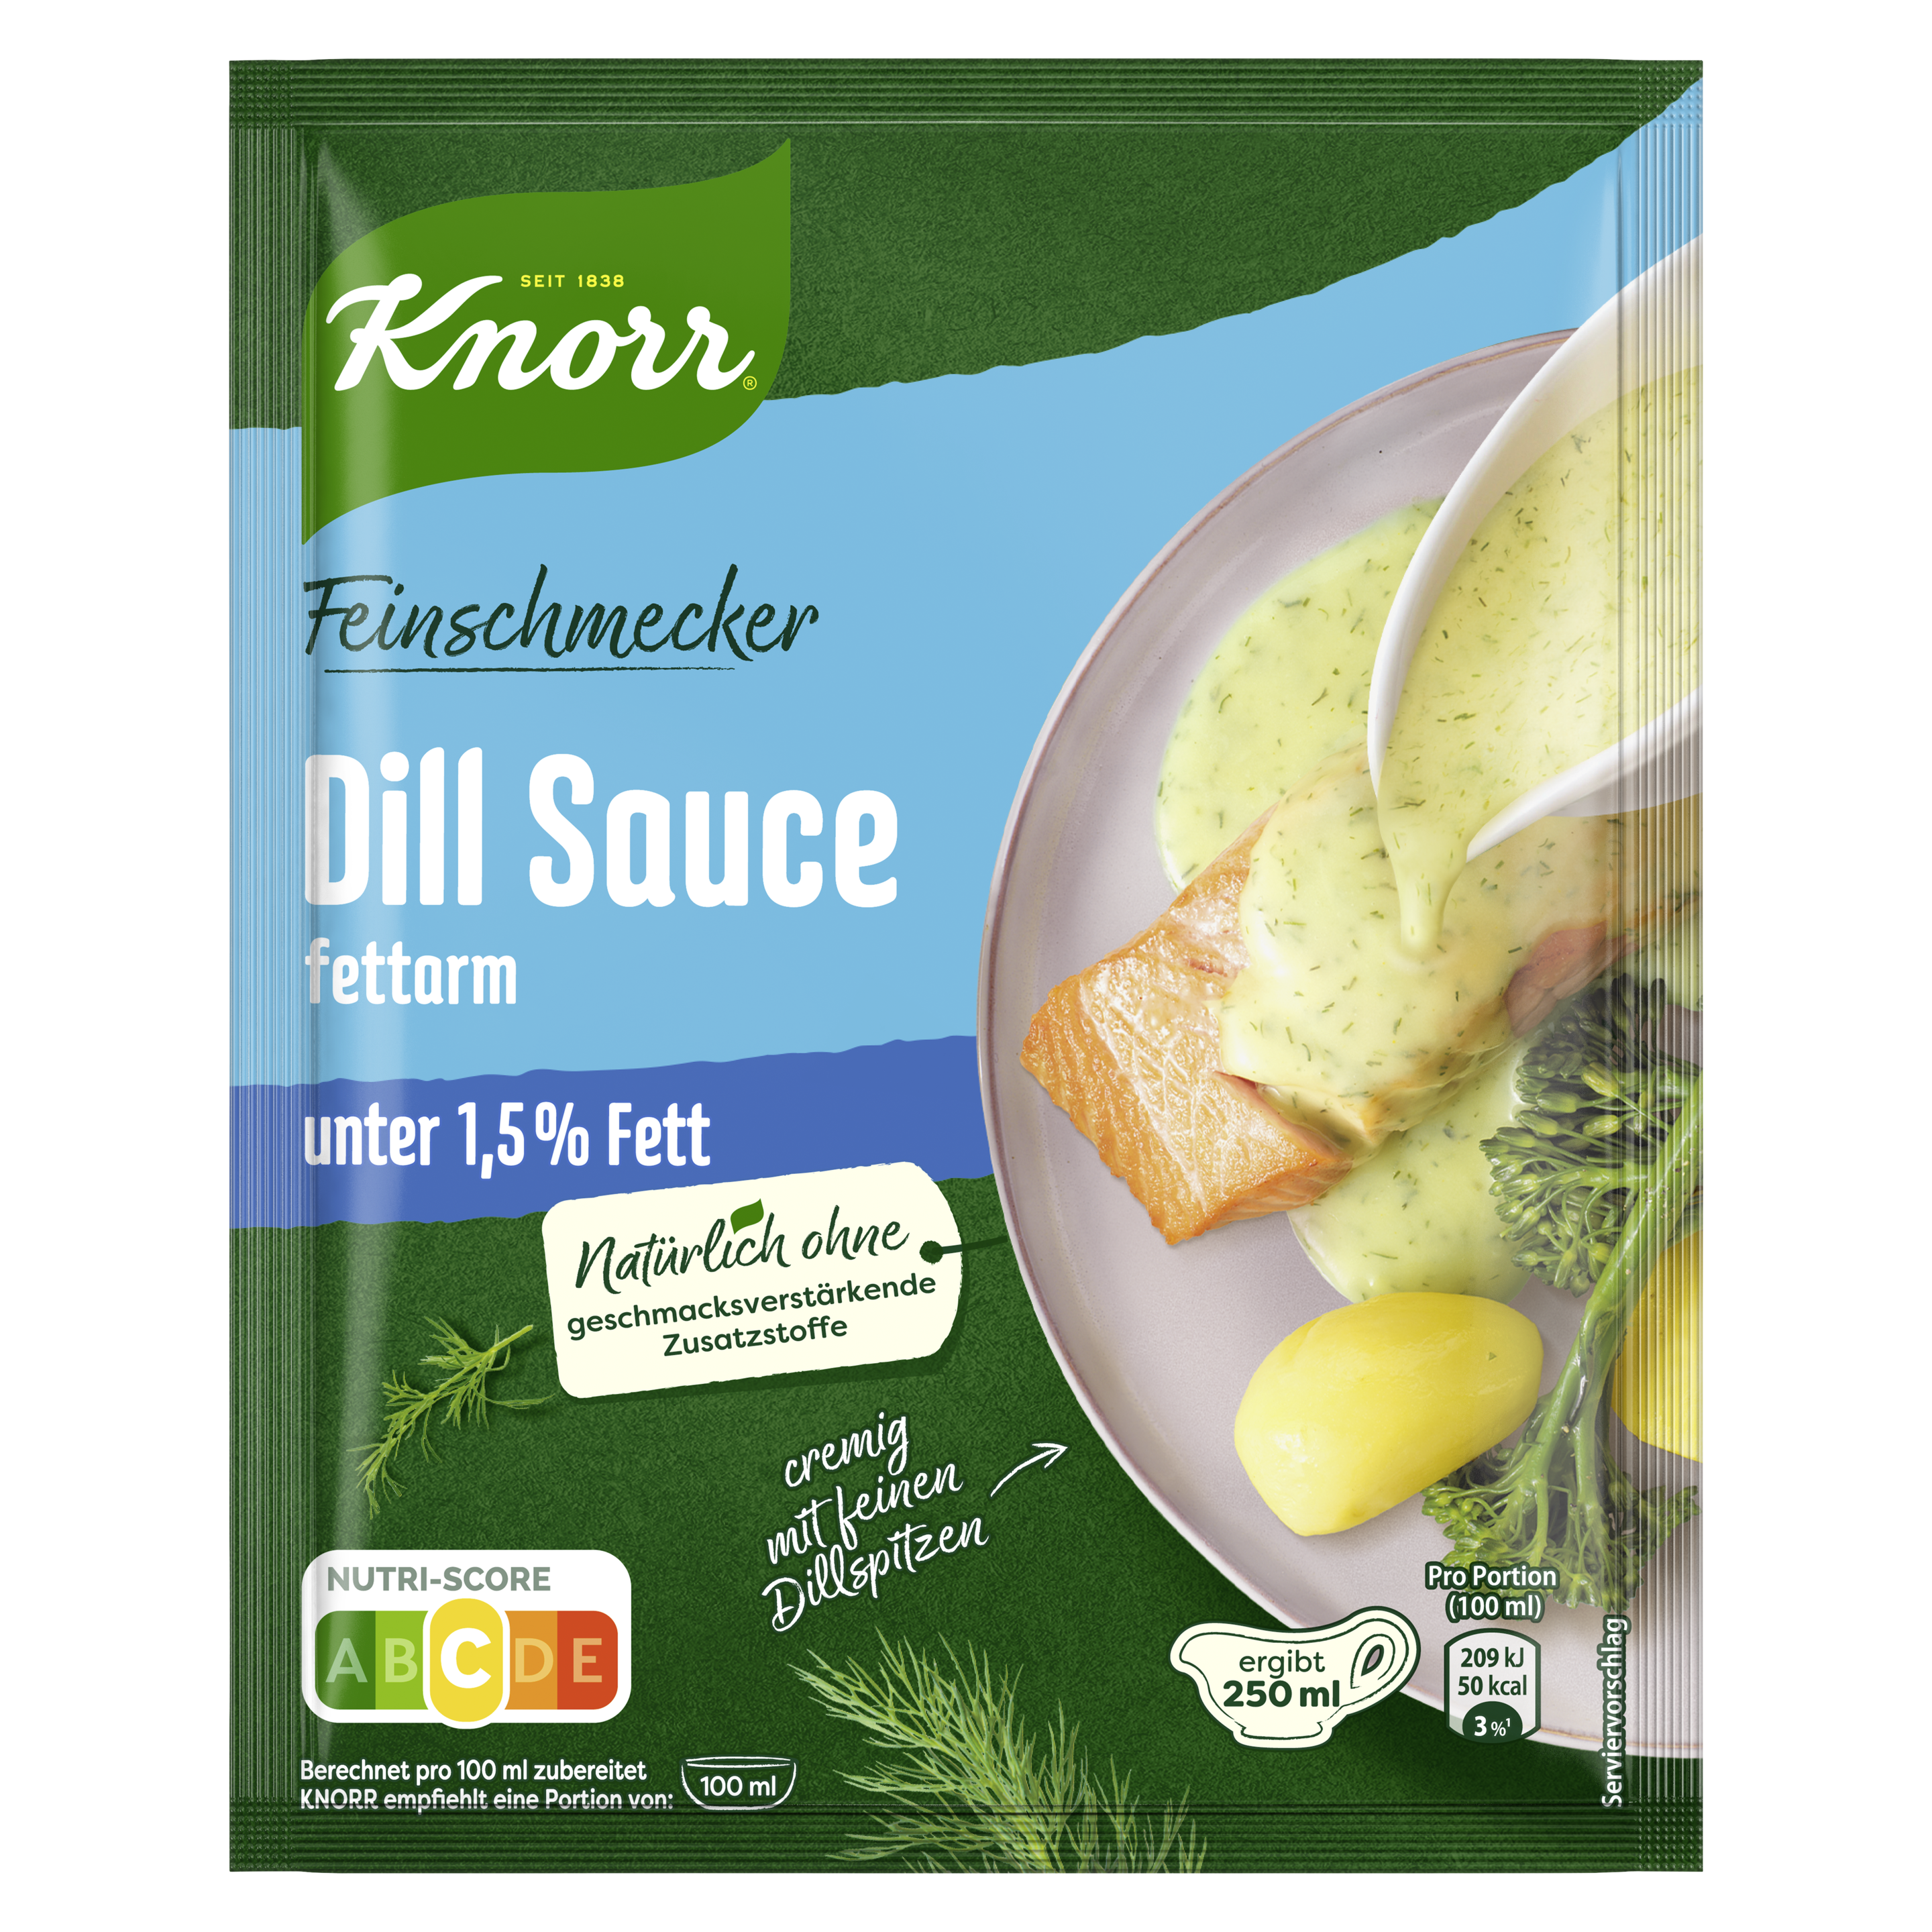 Knorr Feinschmecker Dill Sauce fettarm ergibt 250 ml | Knorr | 